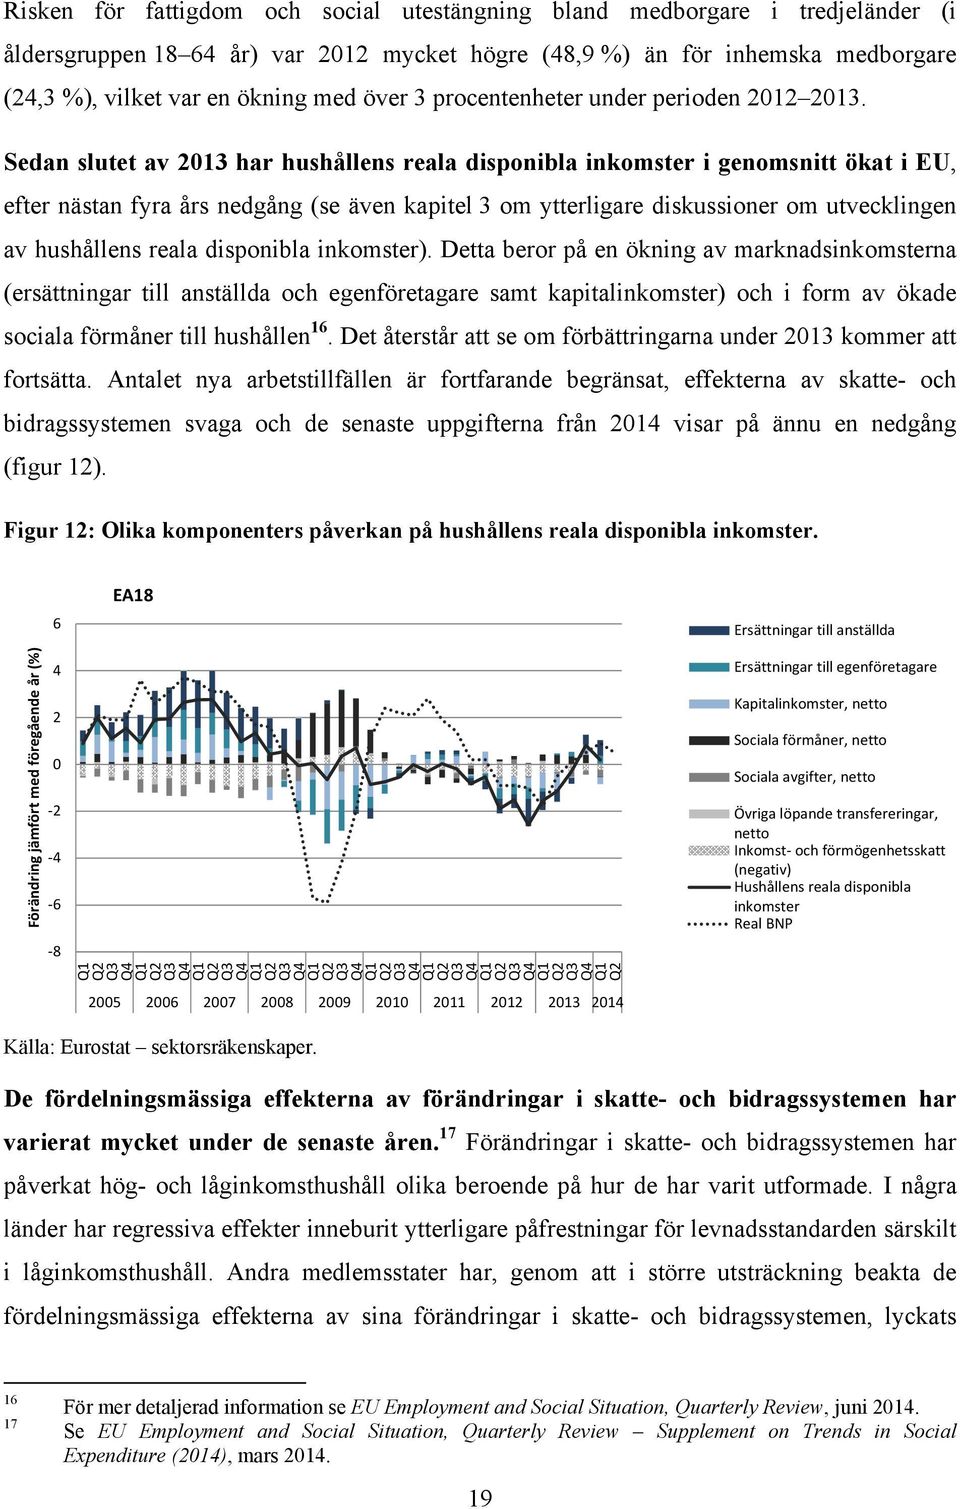 Sedan slutet av 2013 har hushållens reala disponibla inkomster i genomsnitt ökat i EU, efter nästan fyra års nedgång (se även kapitel 3 om ytterligare diskussioner om utvecklingen av hushållens reala